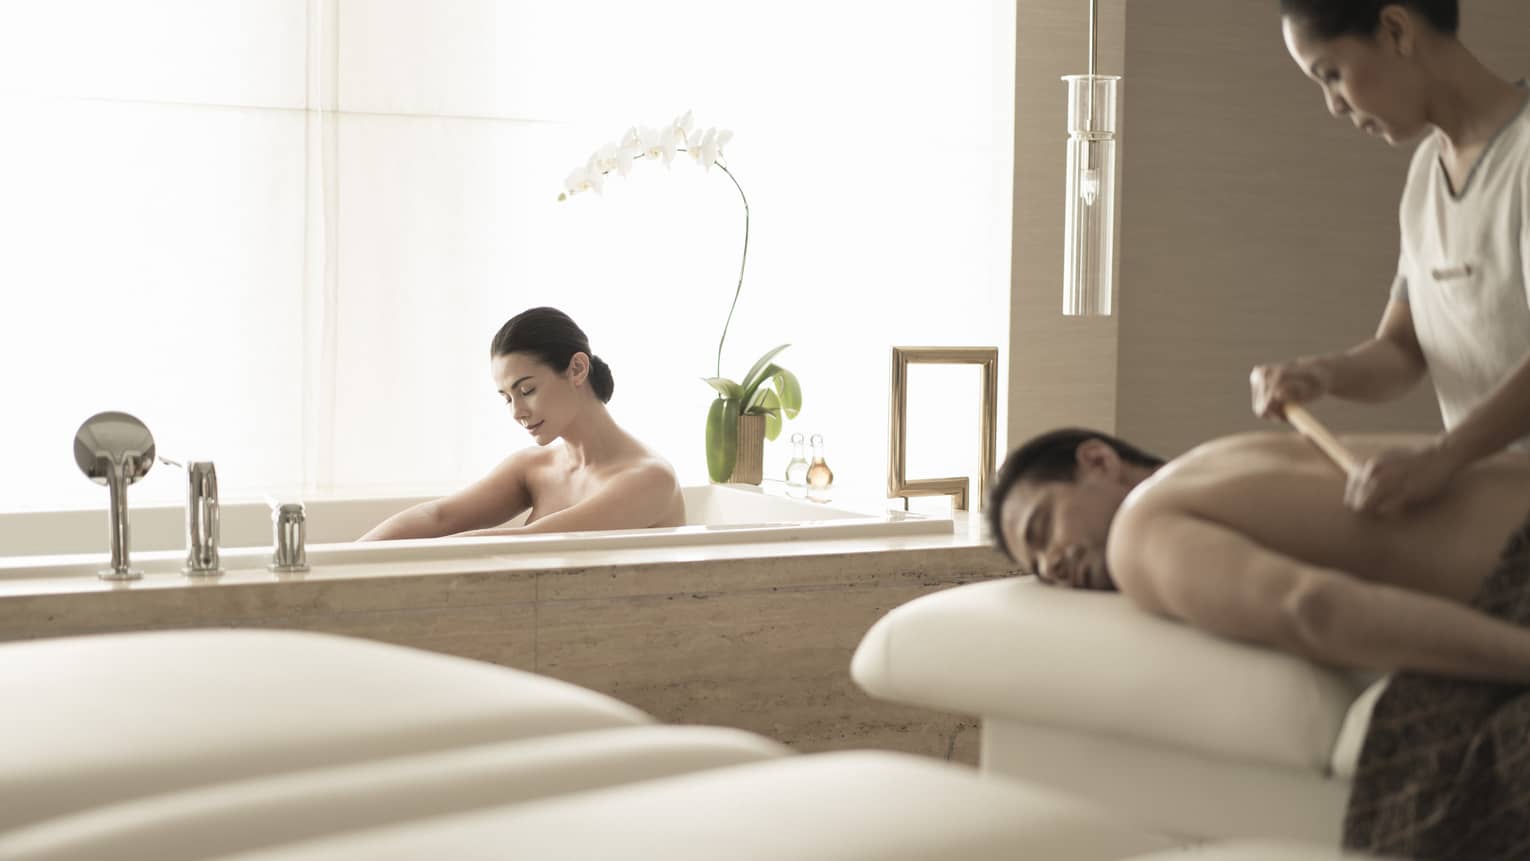 Woman soaks in spa tub near man getting massage 